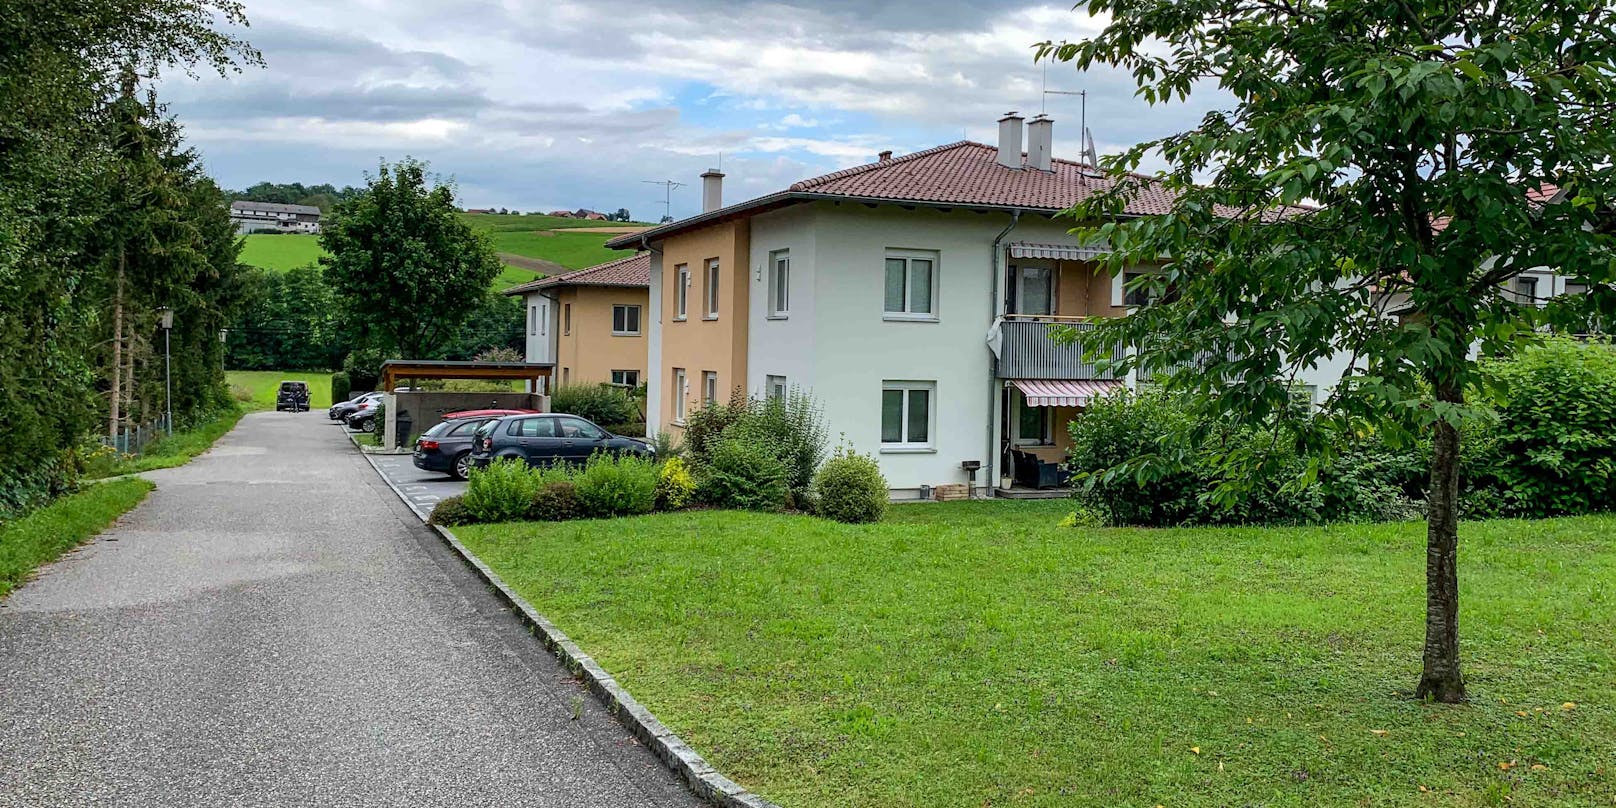 In diesem Haus in Rainbach am Innkreis soll am 17. Juli 2020 ein Familienvater versucht haben, seine Frau und die beiden Kinder zu töten.